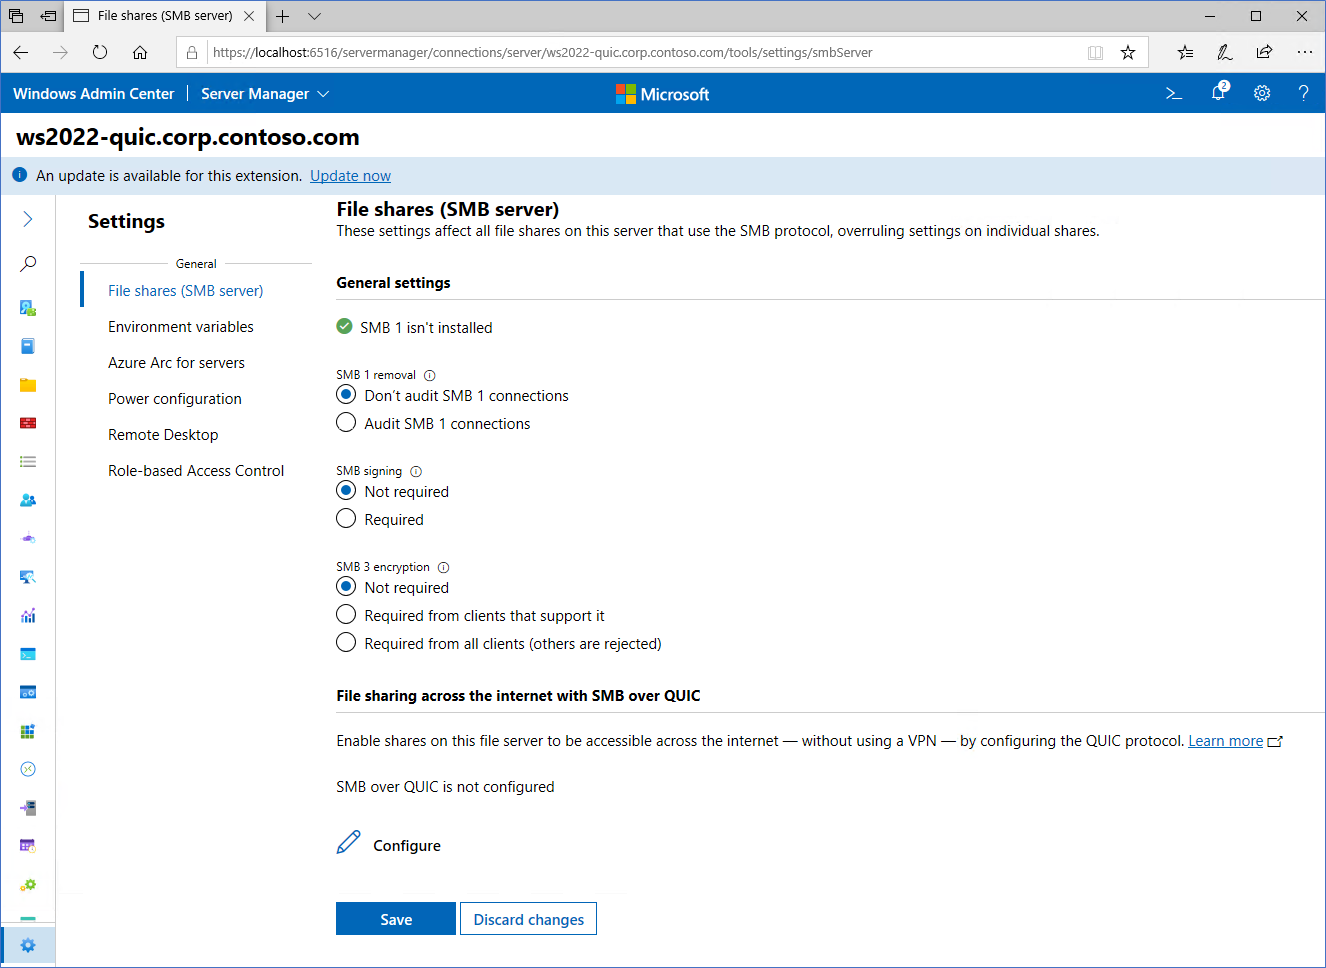 Immagine che mostra la schermata di configurazione per SMB su QUIC in Windows Amministrazione Center